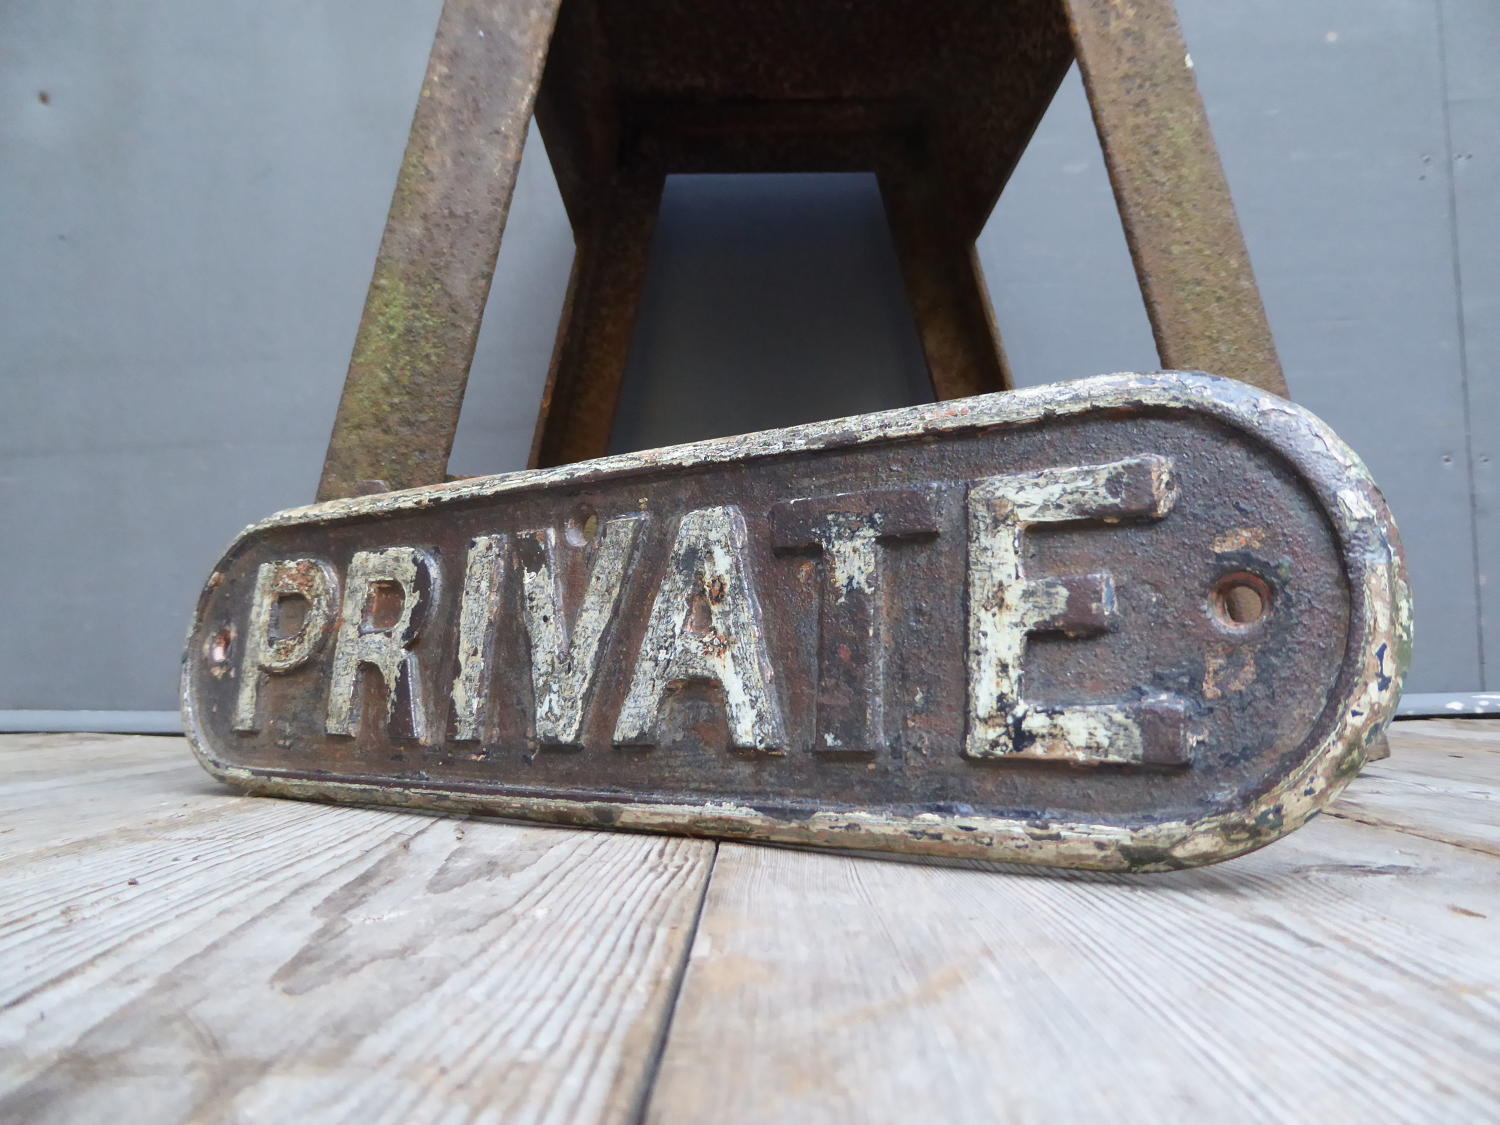 'Private'